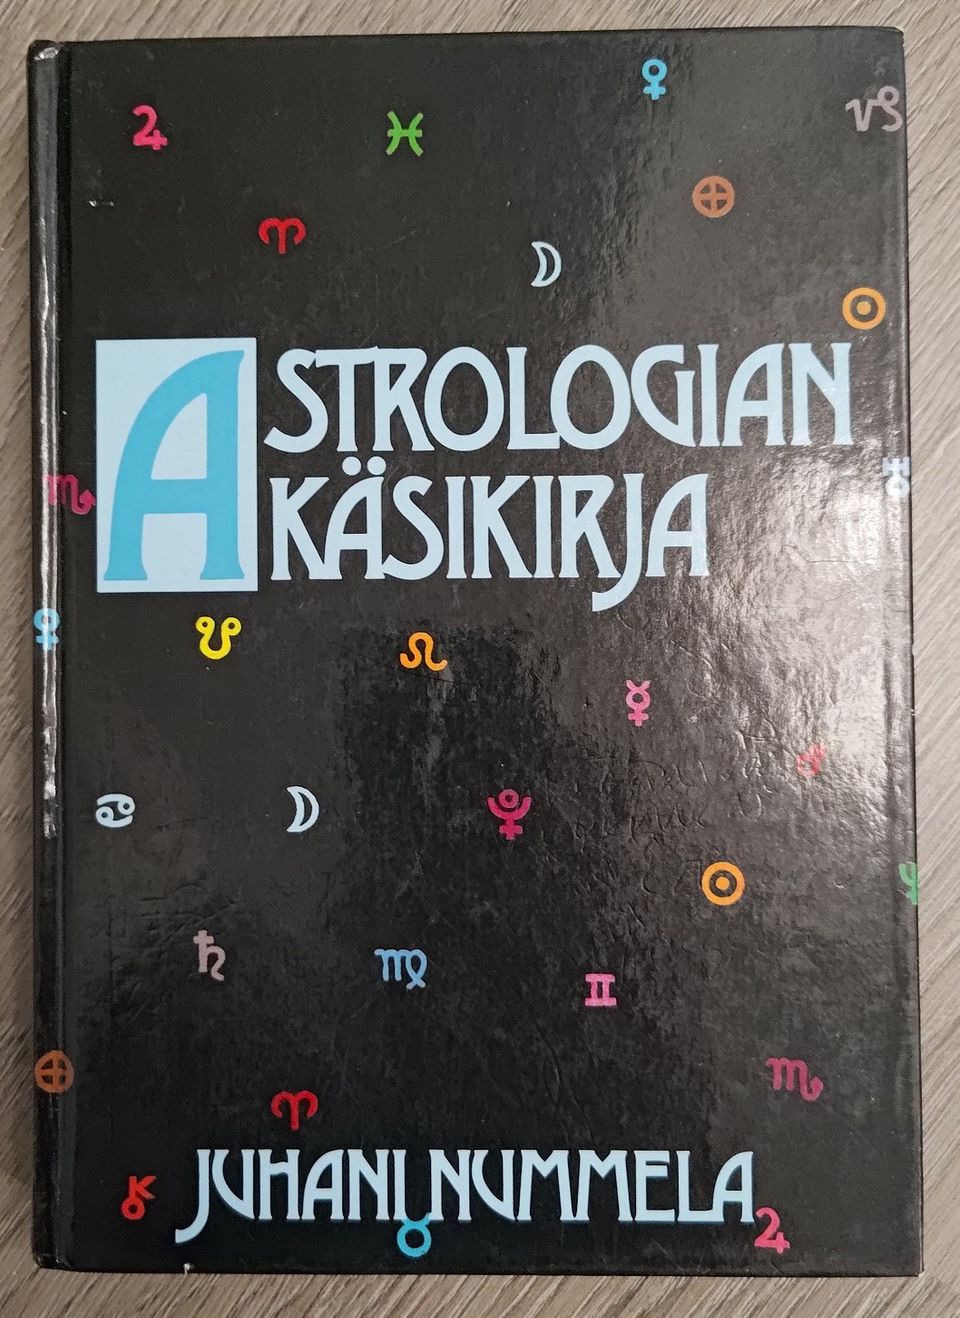 Astrologian käsikirja -kirja